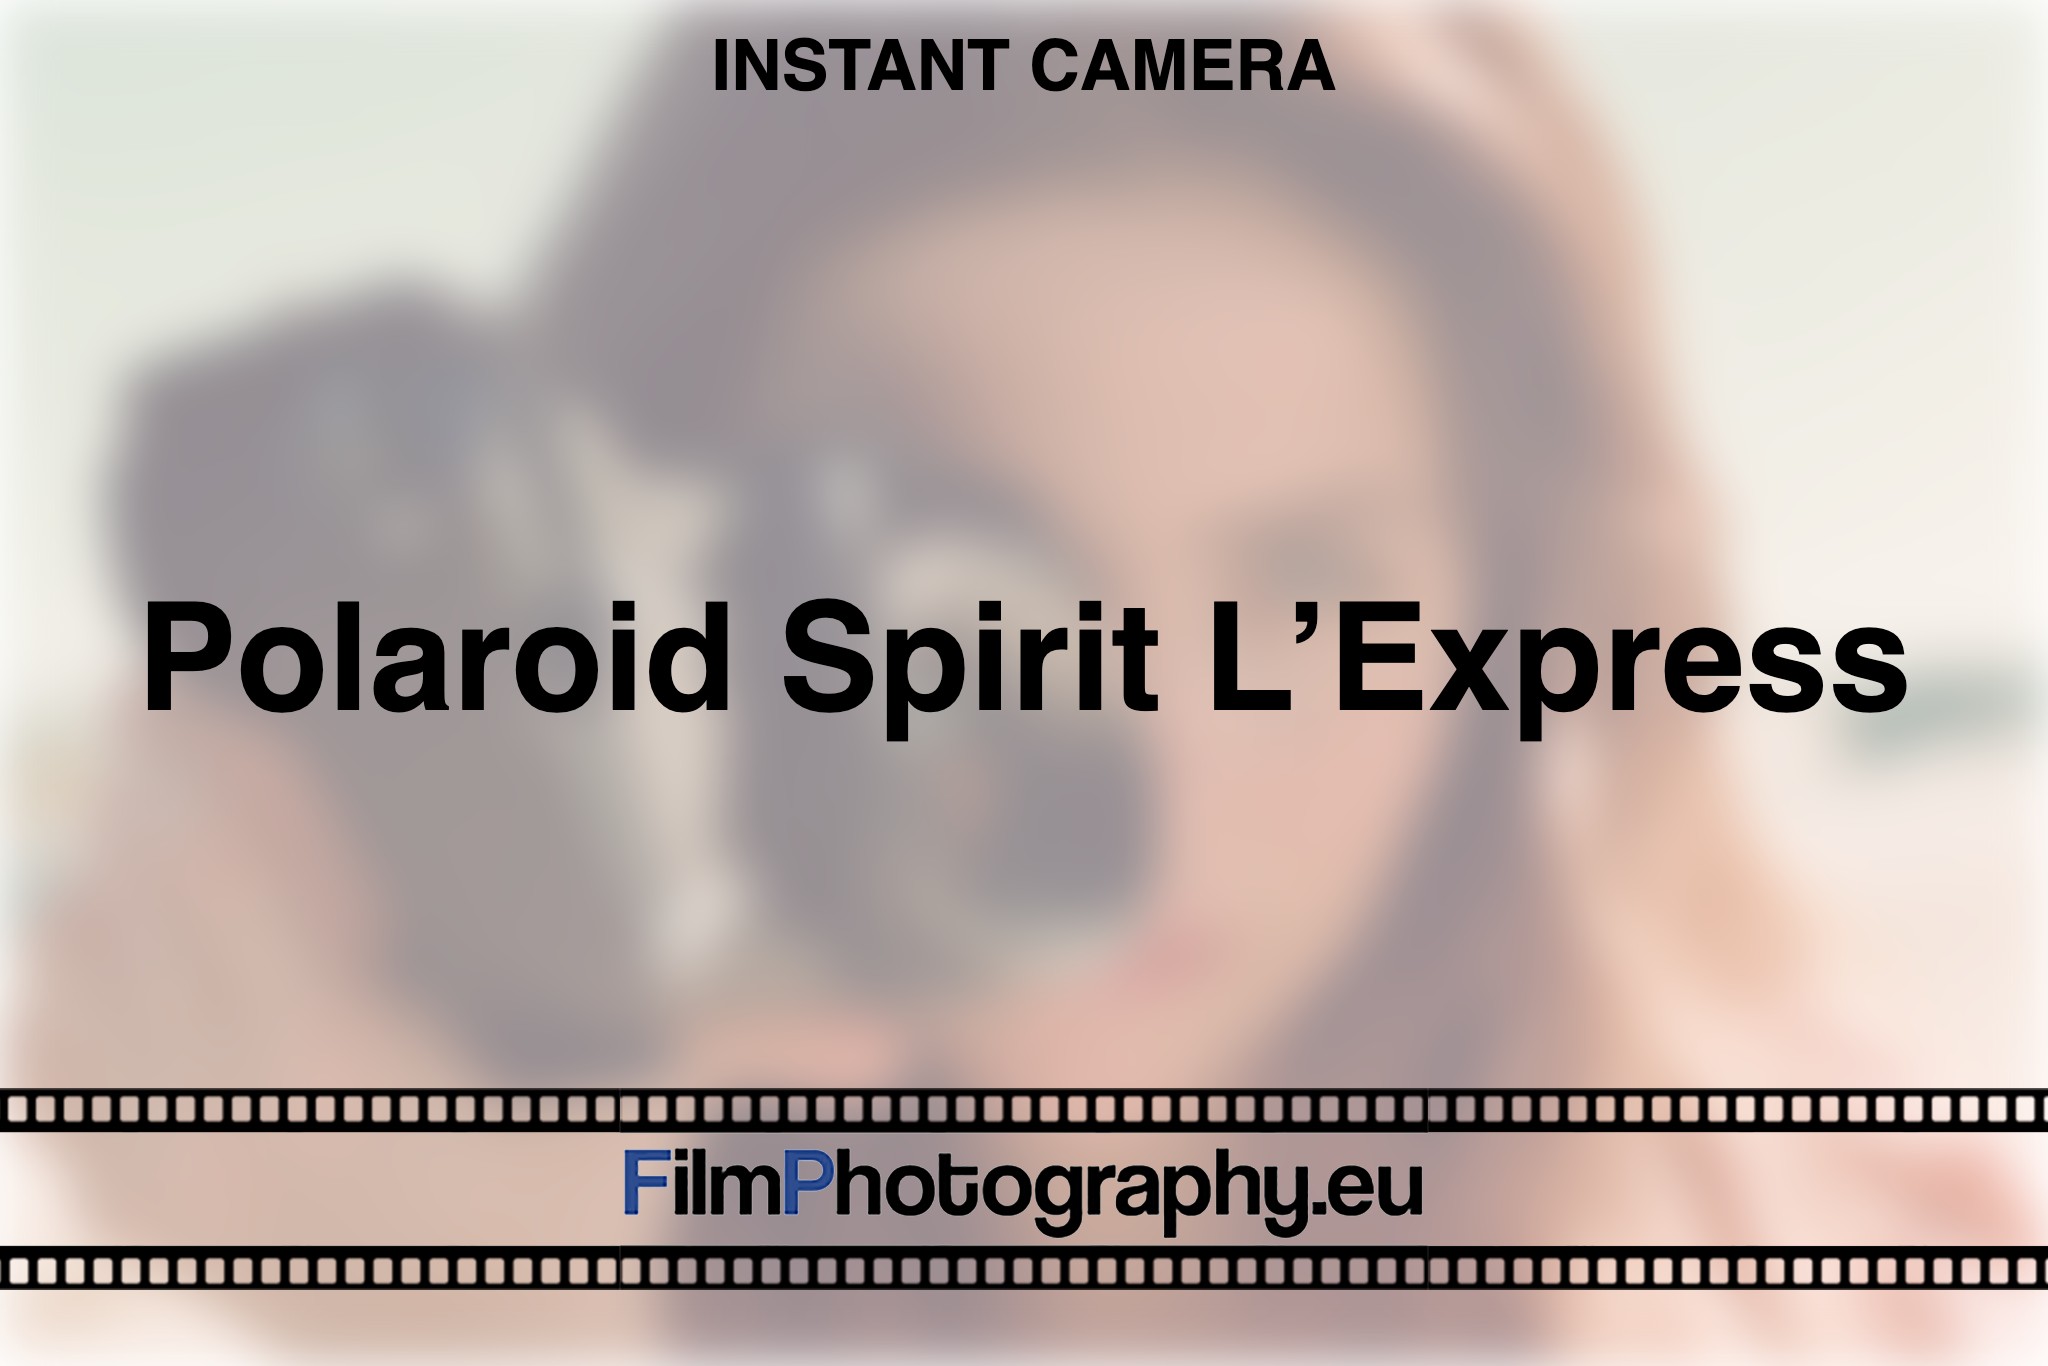 polaroid-spirit-l’express-instant-camera-bnv